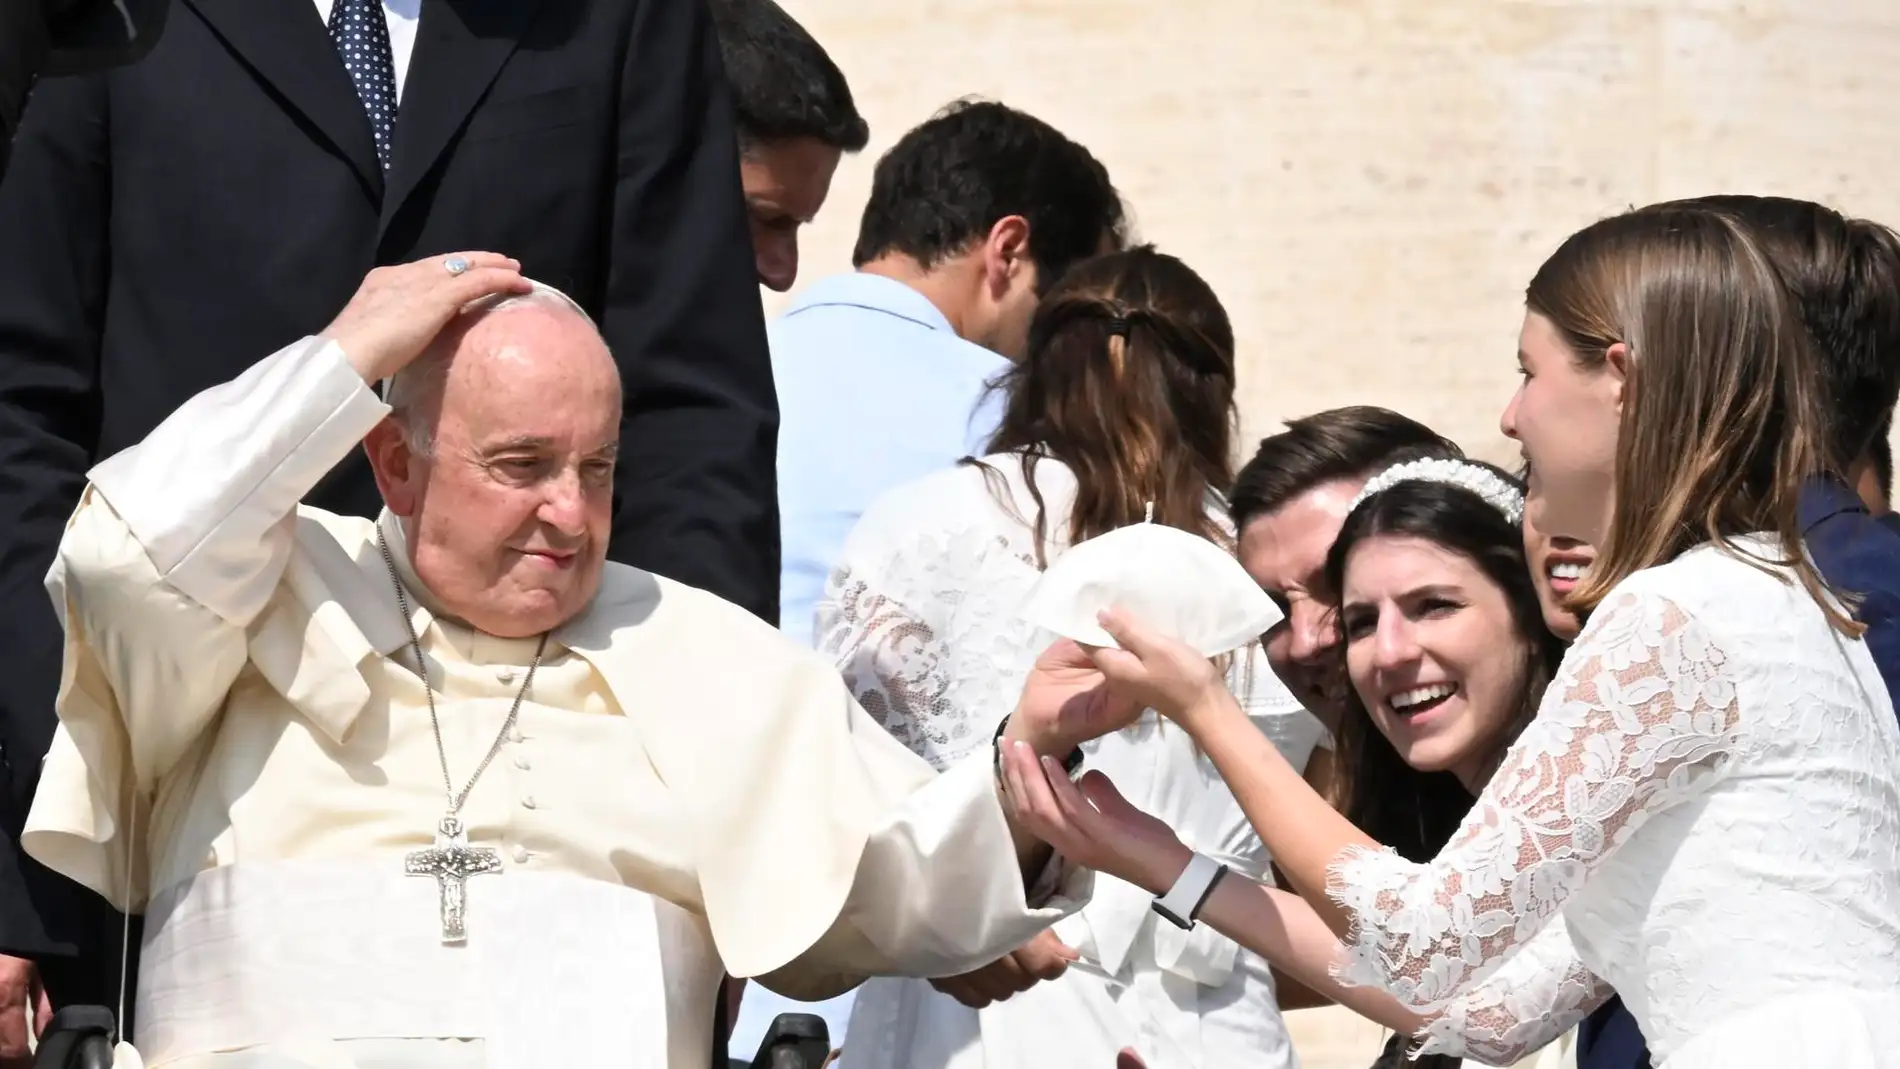 El Papa Francisco saluda a los fieles durante su audiencia general semanal